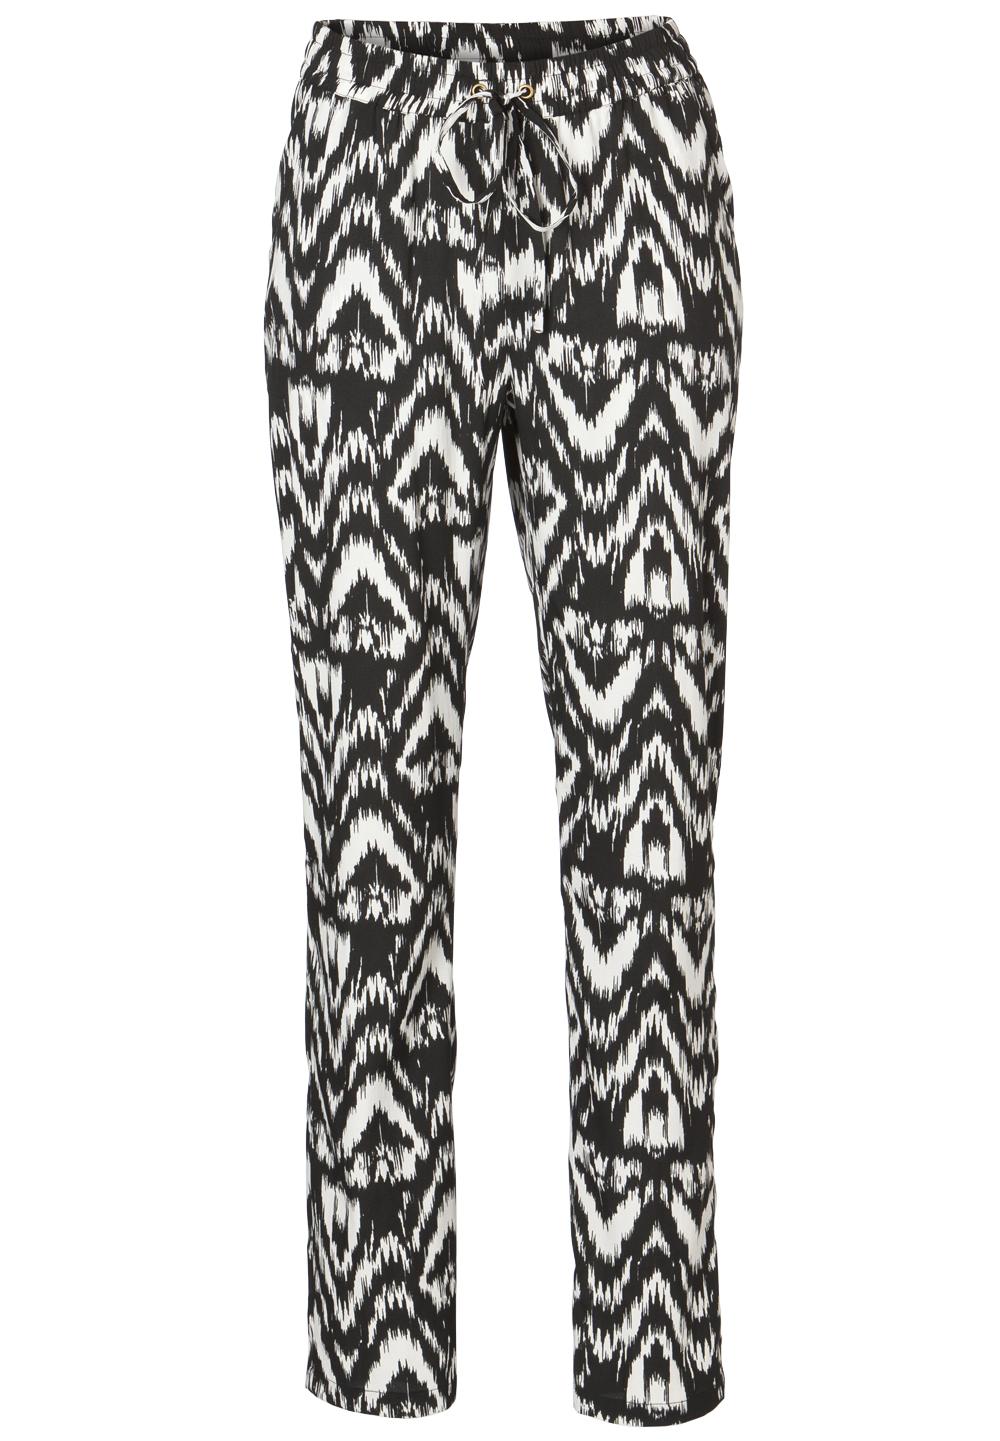 Pantalon imprimé noir et blanc VERO MODA - 19,95€